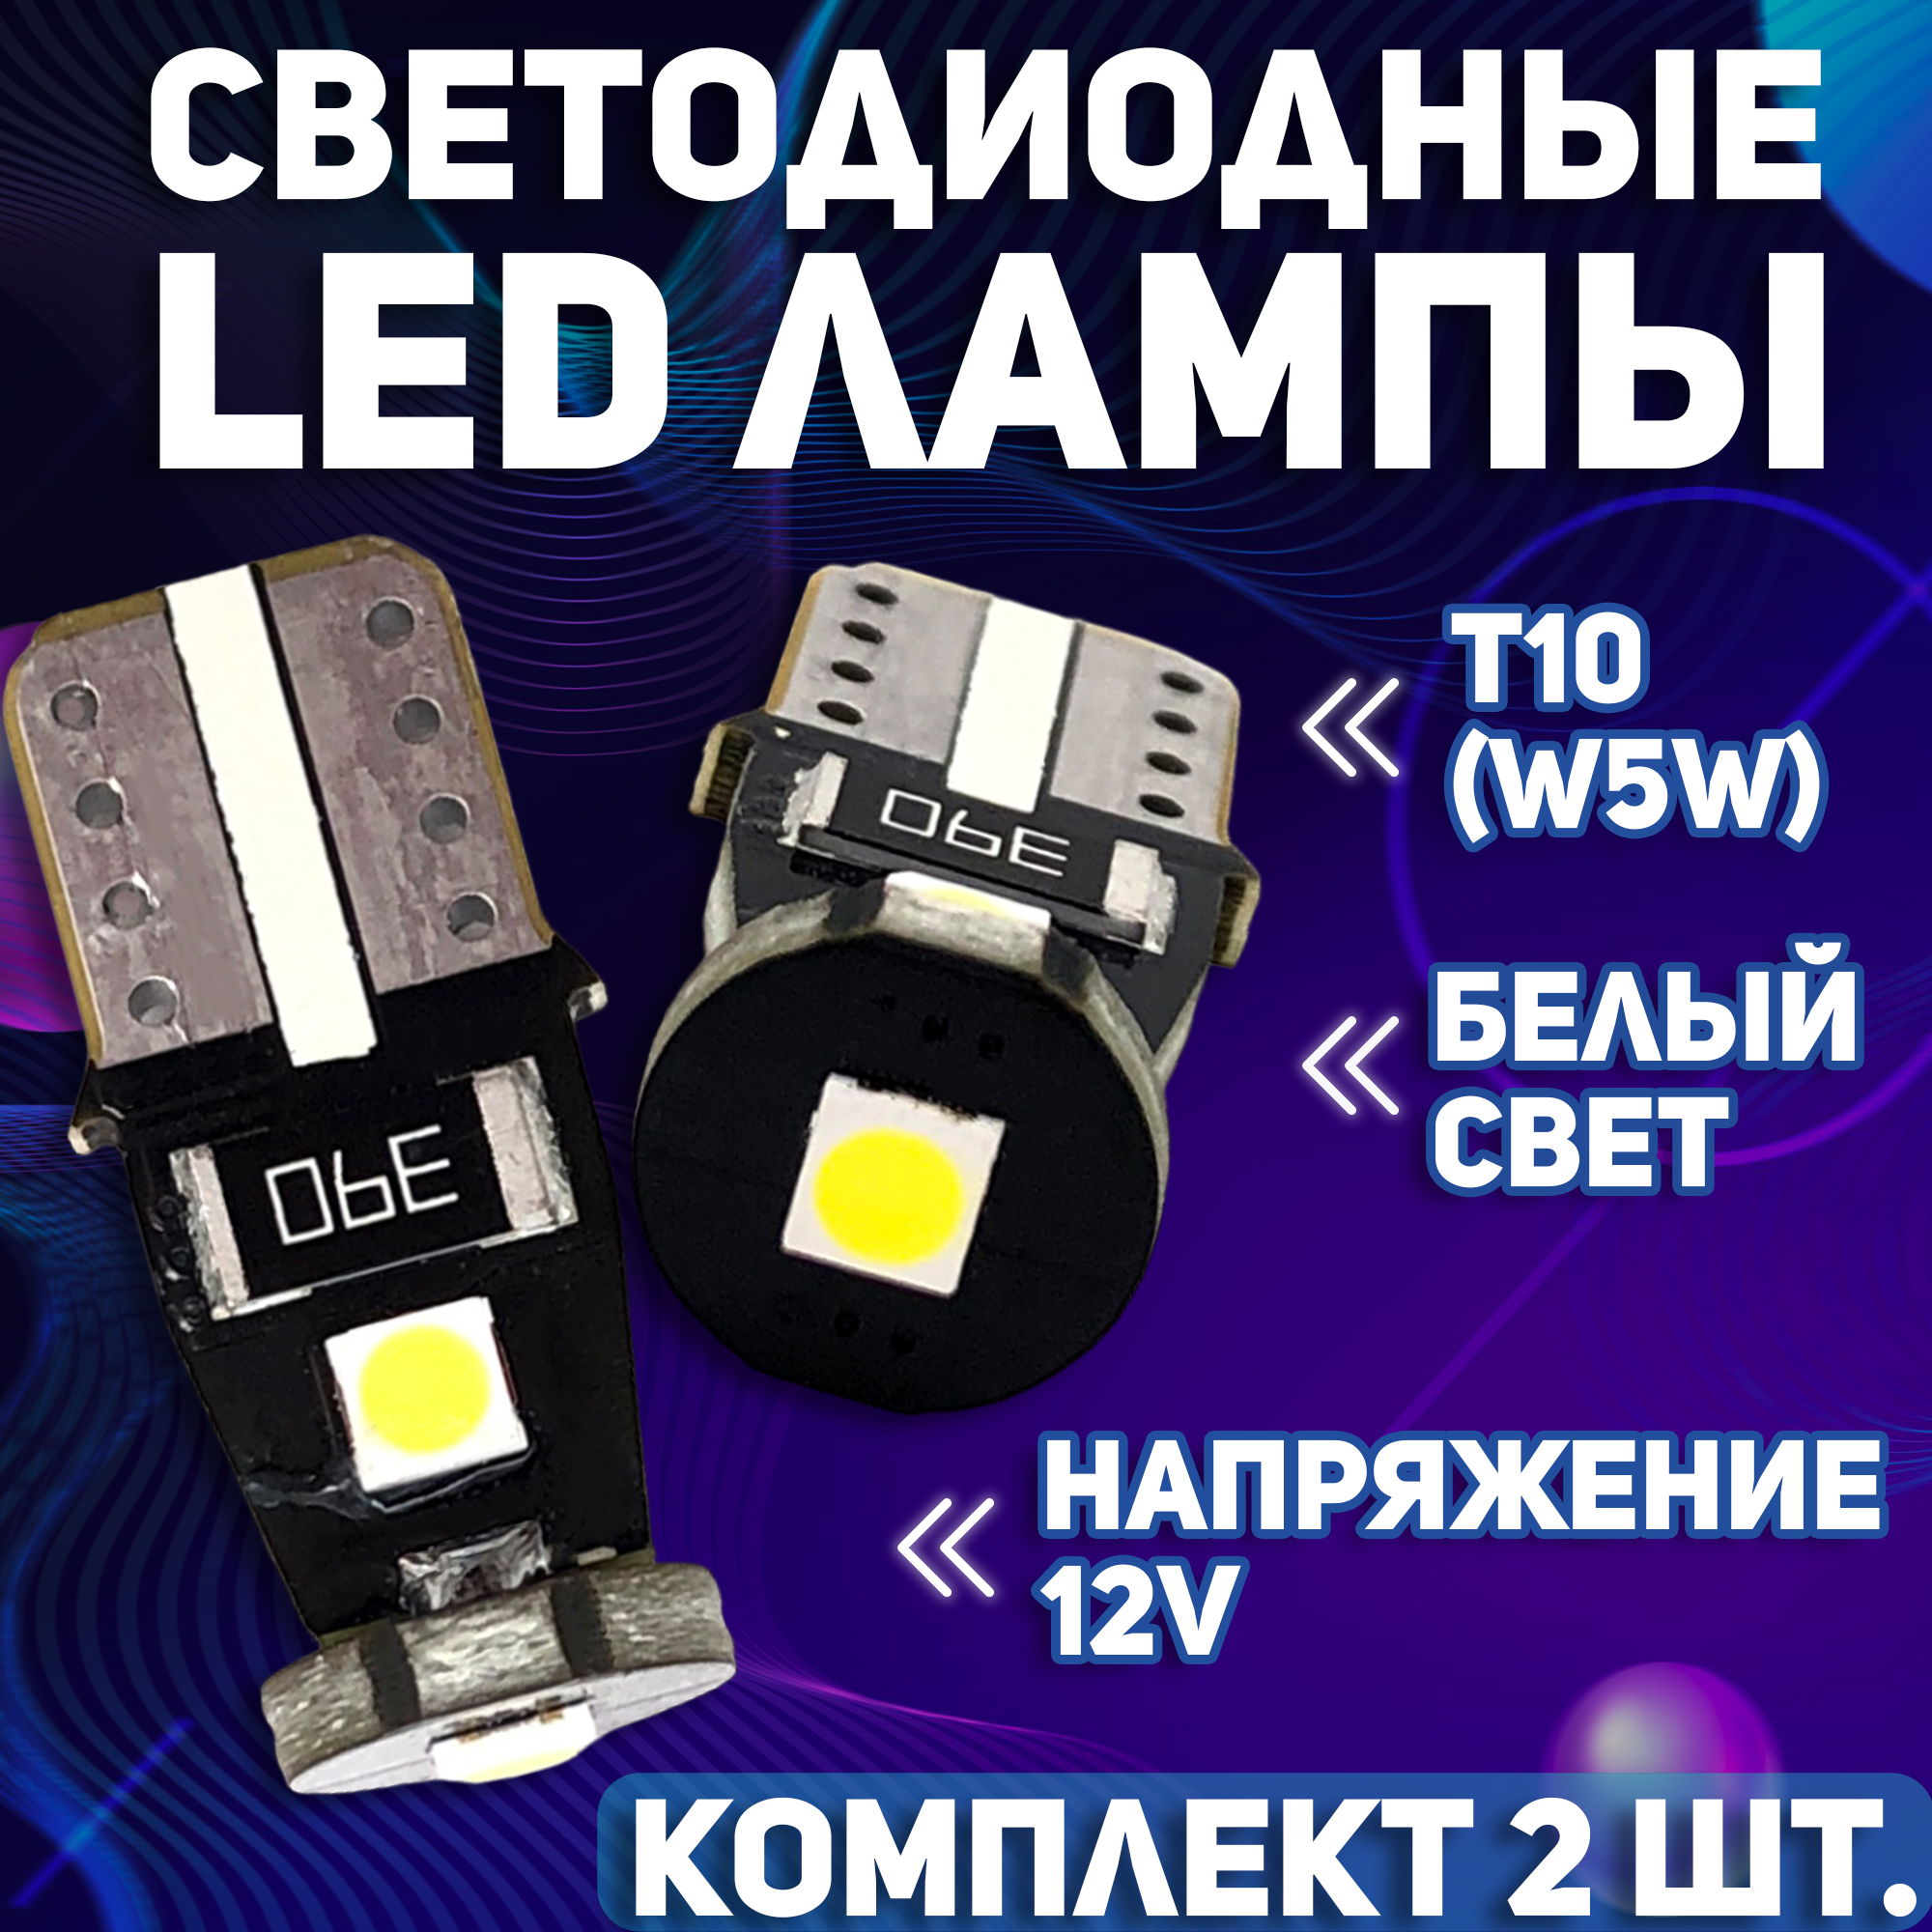 Светодиодные автомобильные LED лампы TaKiMi 3SMD T10 (W5W), Белый, Комплект (2 шт.)